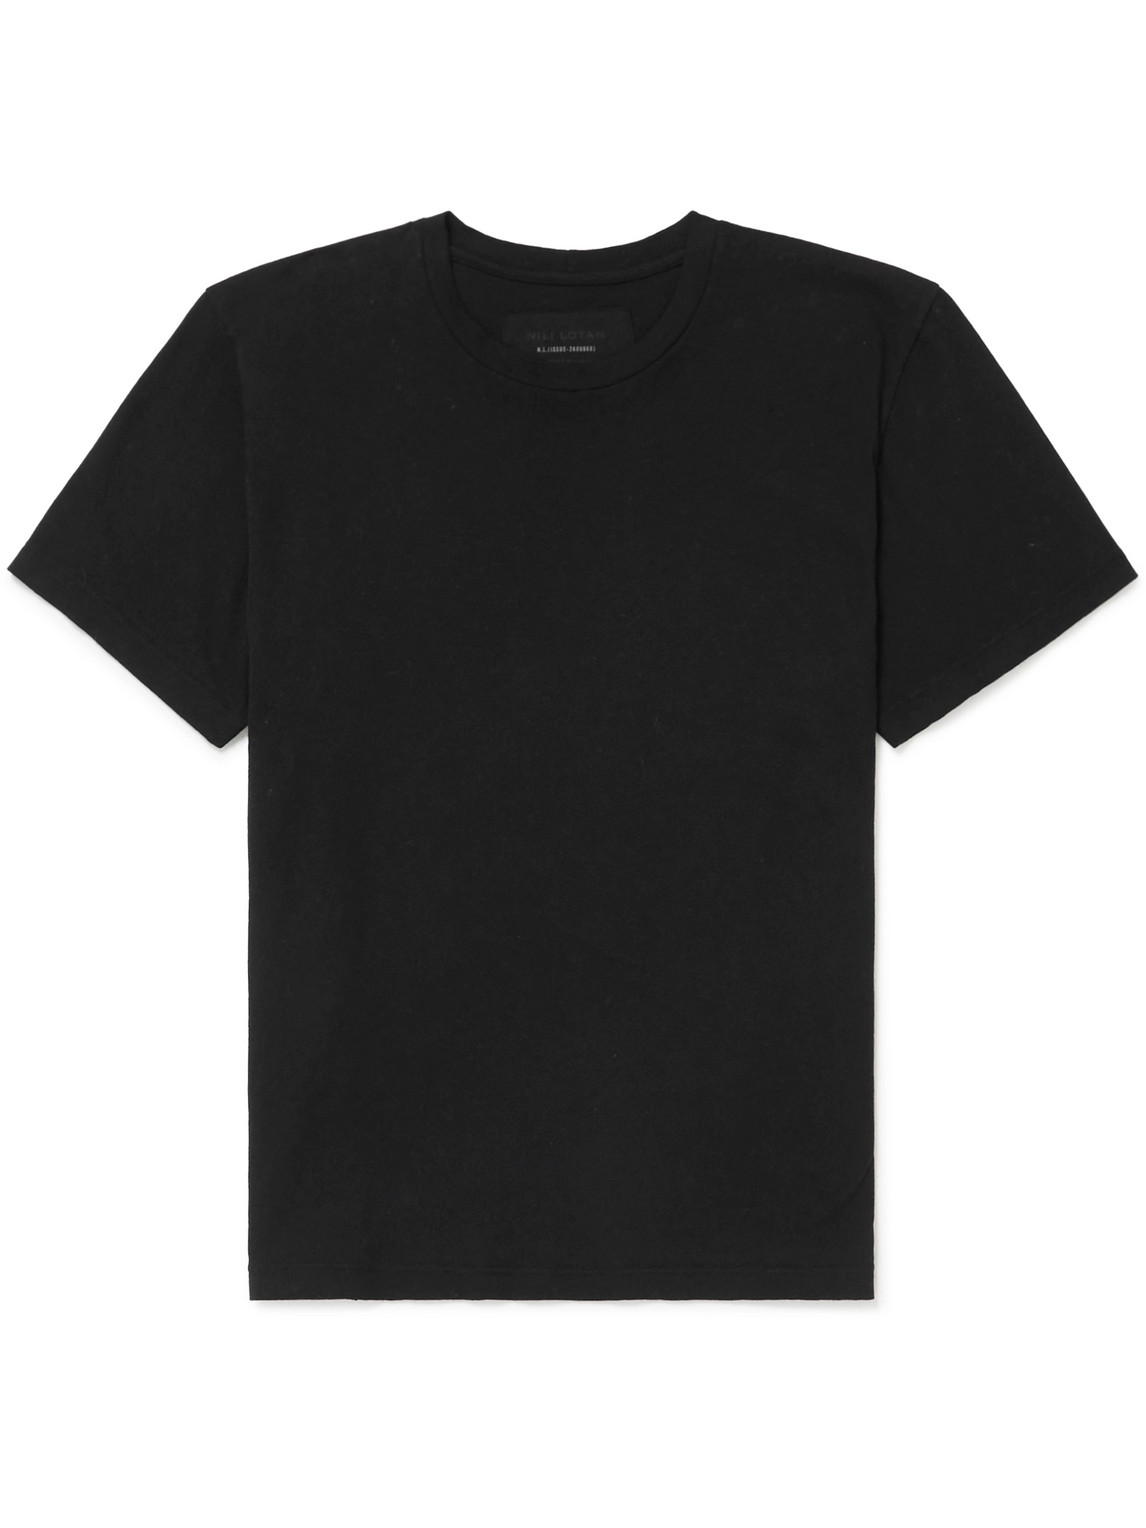 Nili Lotan - Bradley Cotton-Jersey T-Shirt - Men - Black - L von Nili Lotan